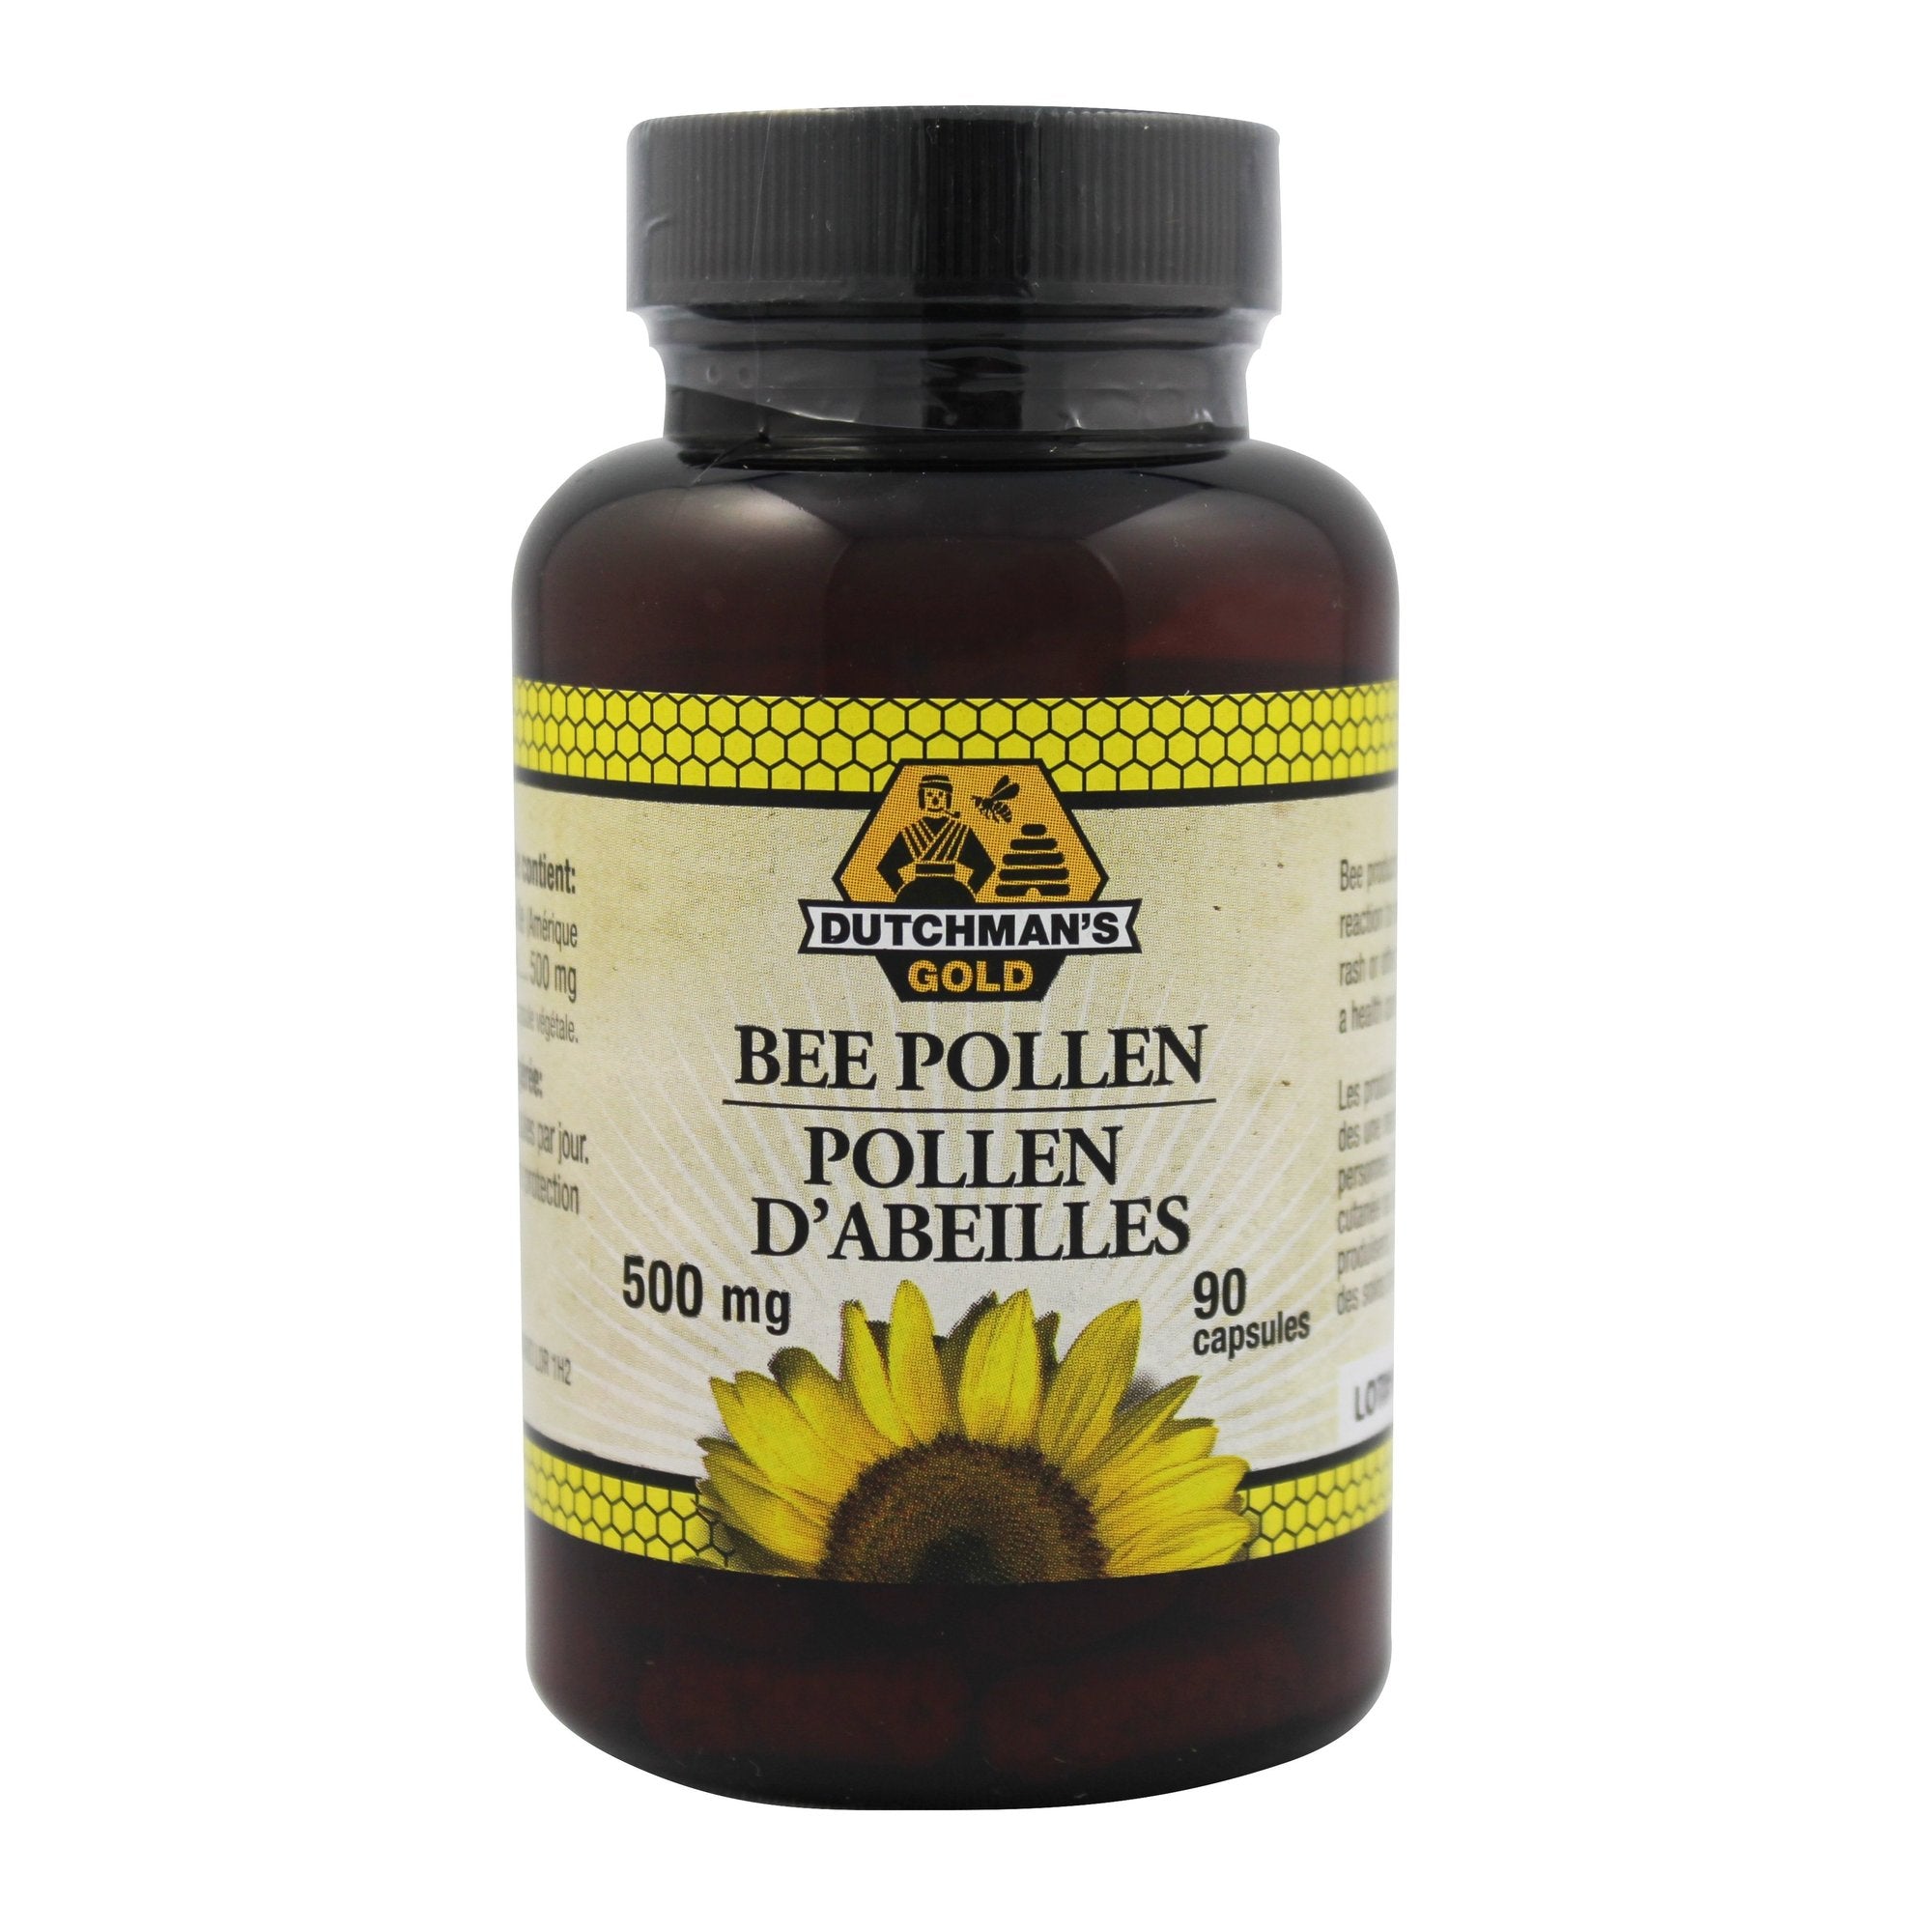 Dutchman's Gold Bee Pollen capsules